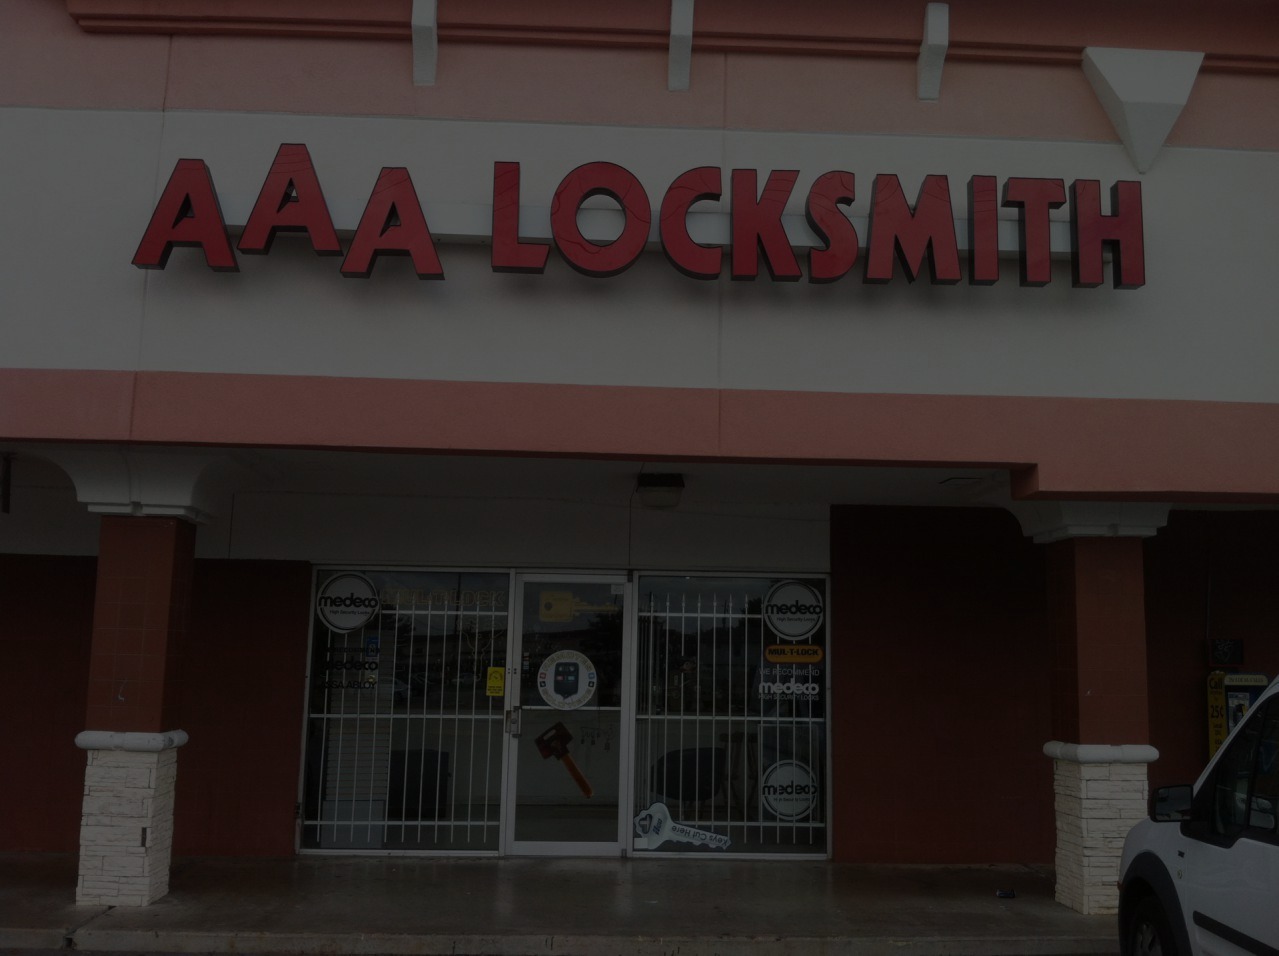 lock smith store